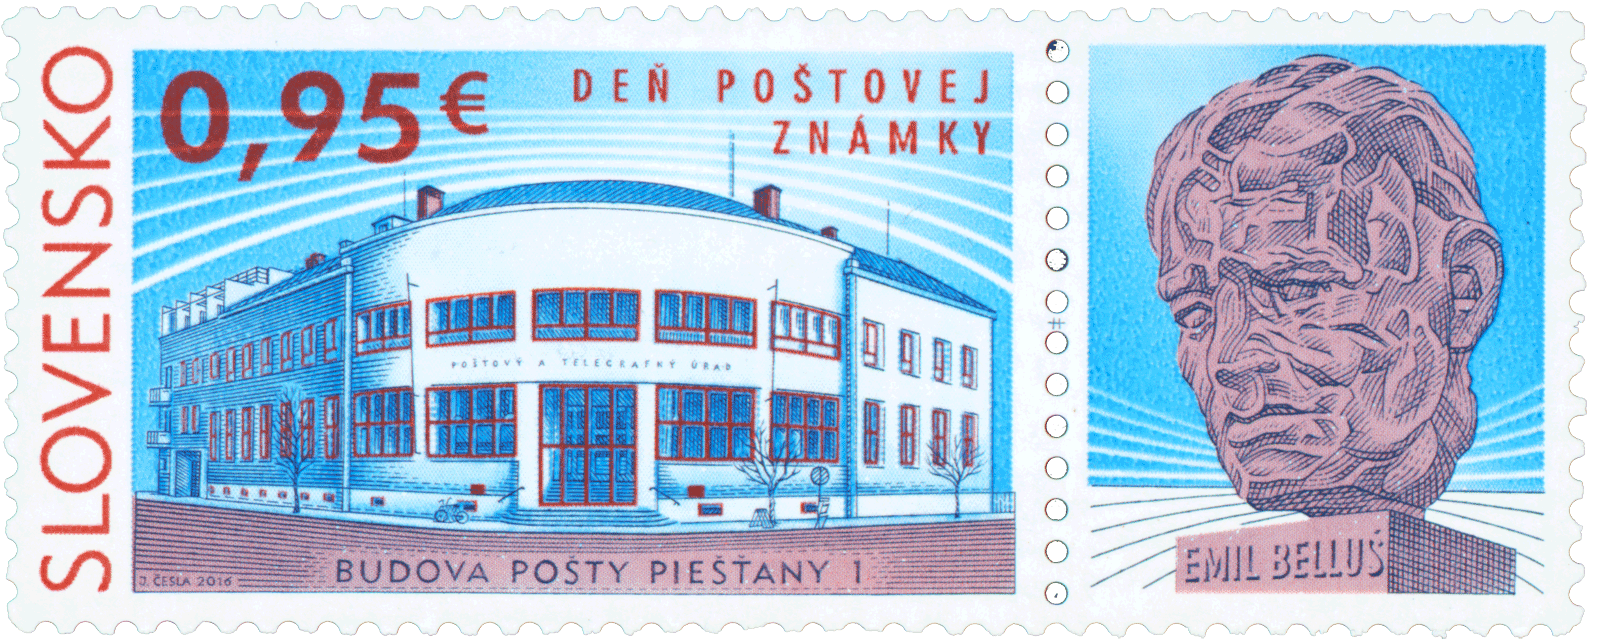 627 - Deň poštovej známky: Budova pošty Piešťany 1